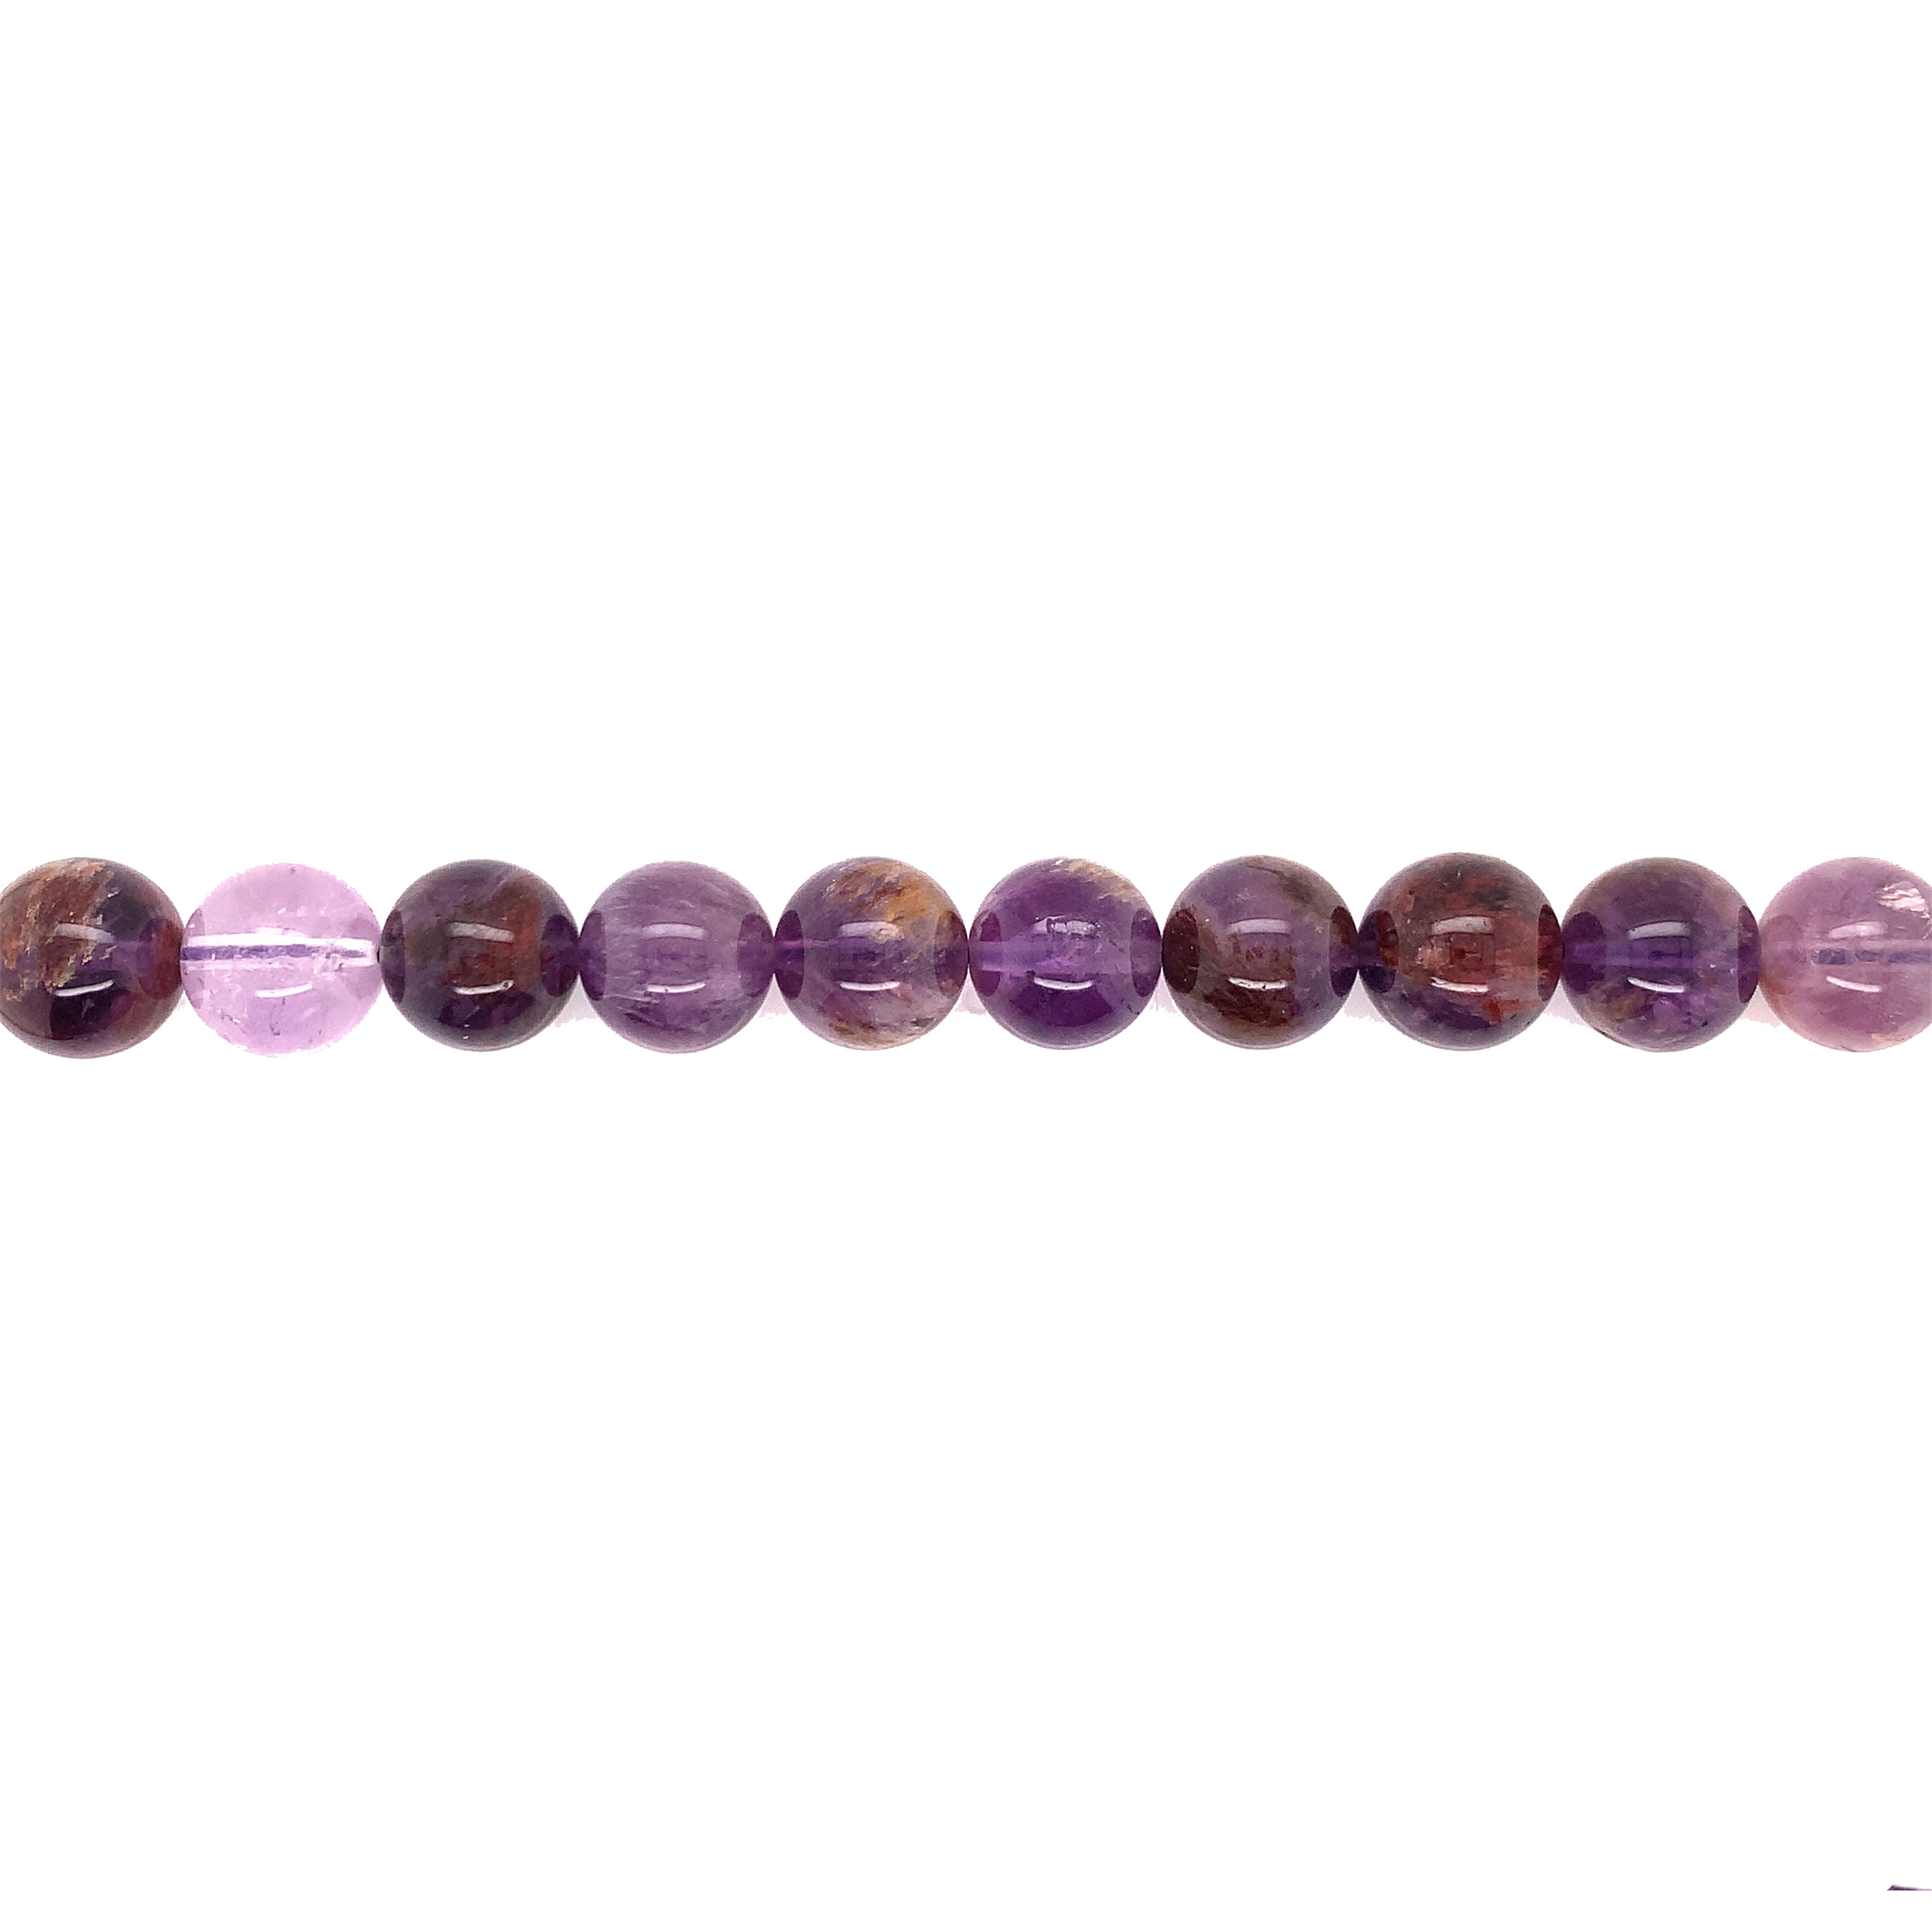 12mm Super 7 Gemstone Beads - Round